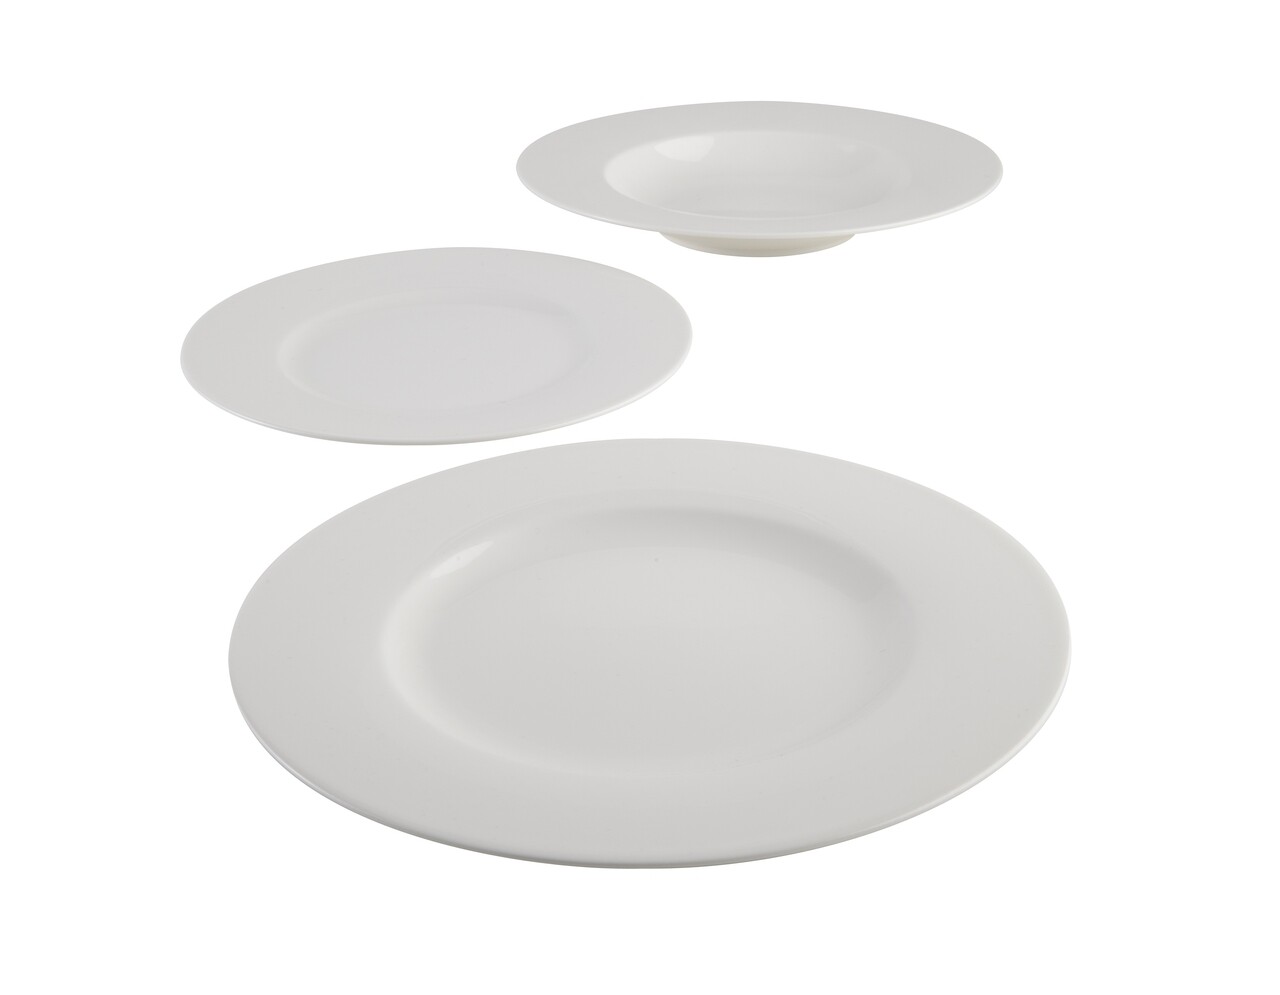 Asztali szett 12 darab, vivo villeroy & boch, basic white starter, prémium porcelán, fehér